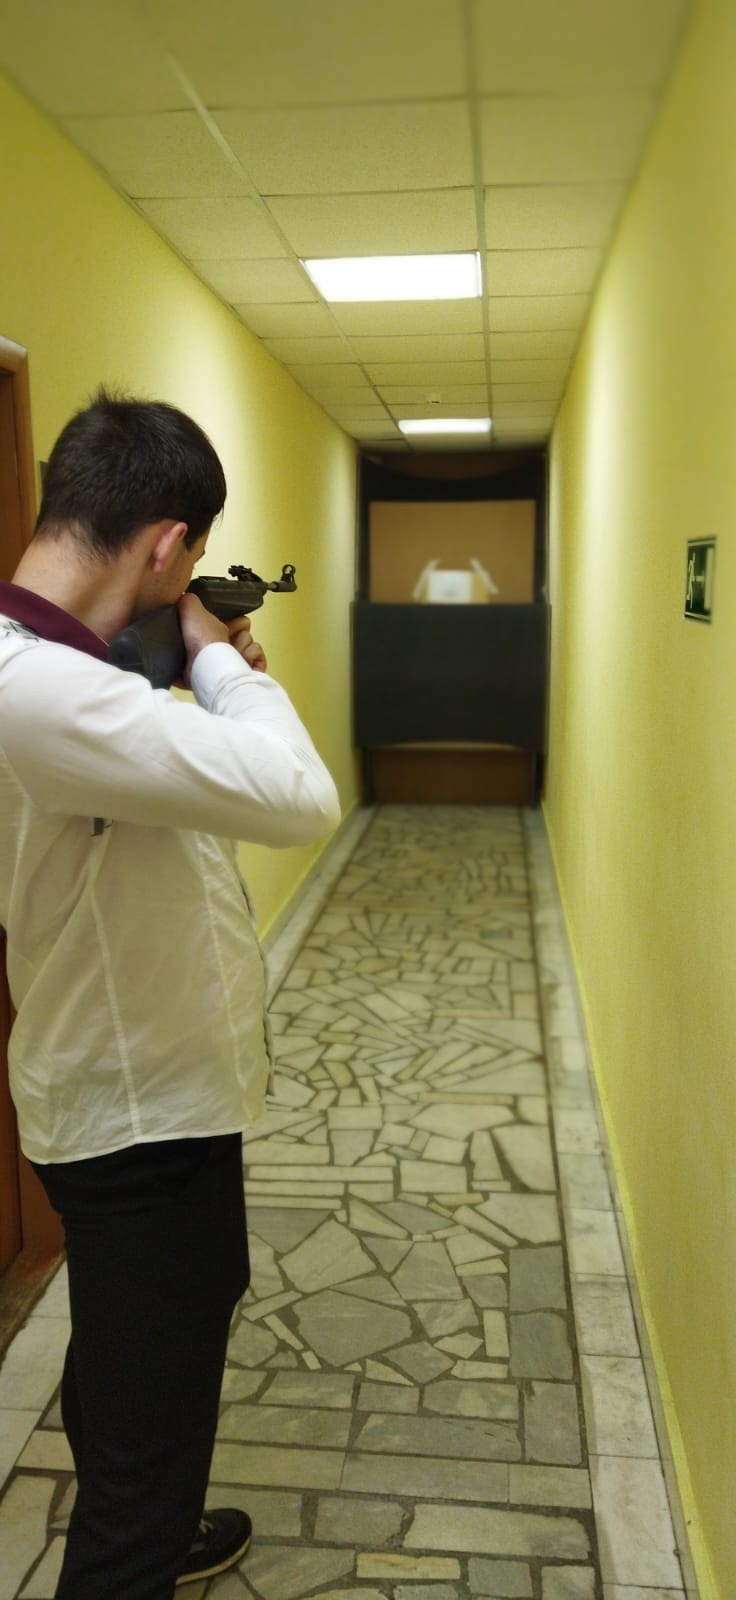  изображение для новости Первые университетские соревнования по пулевой стрельбе